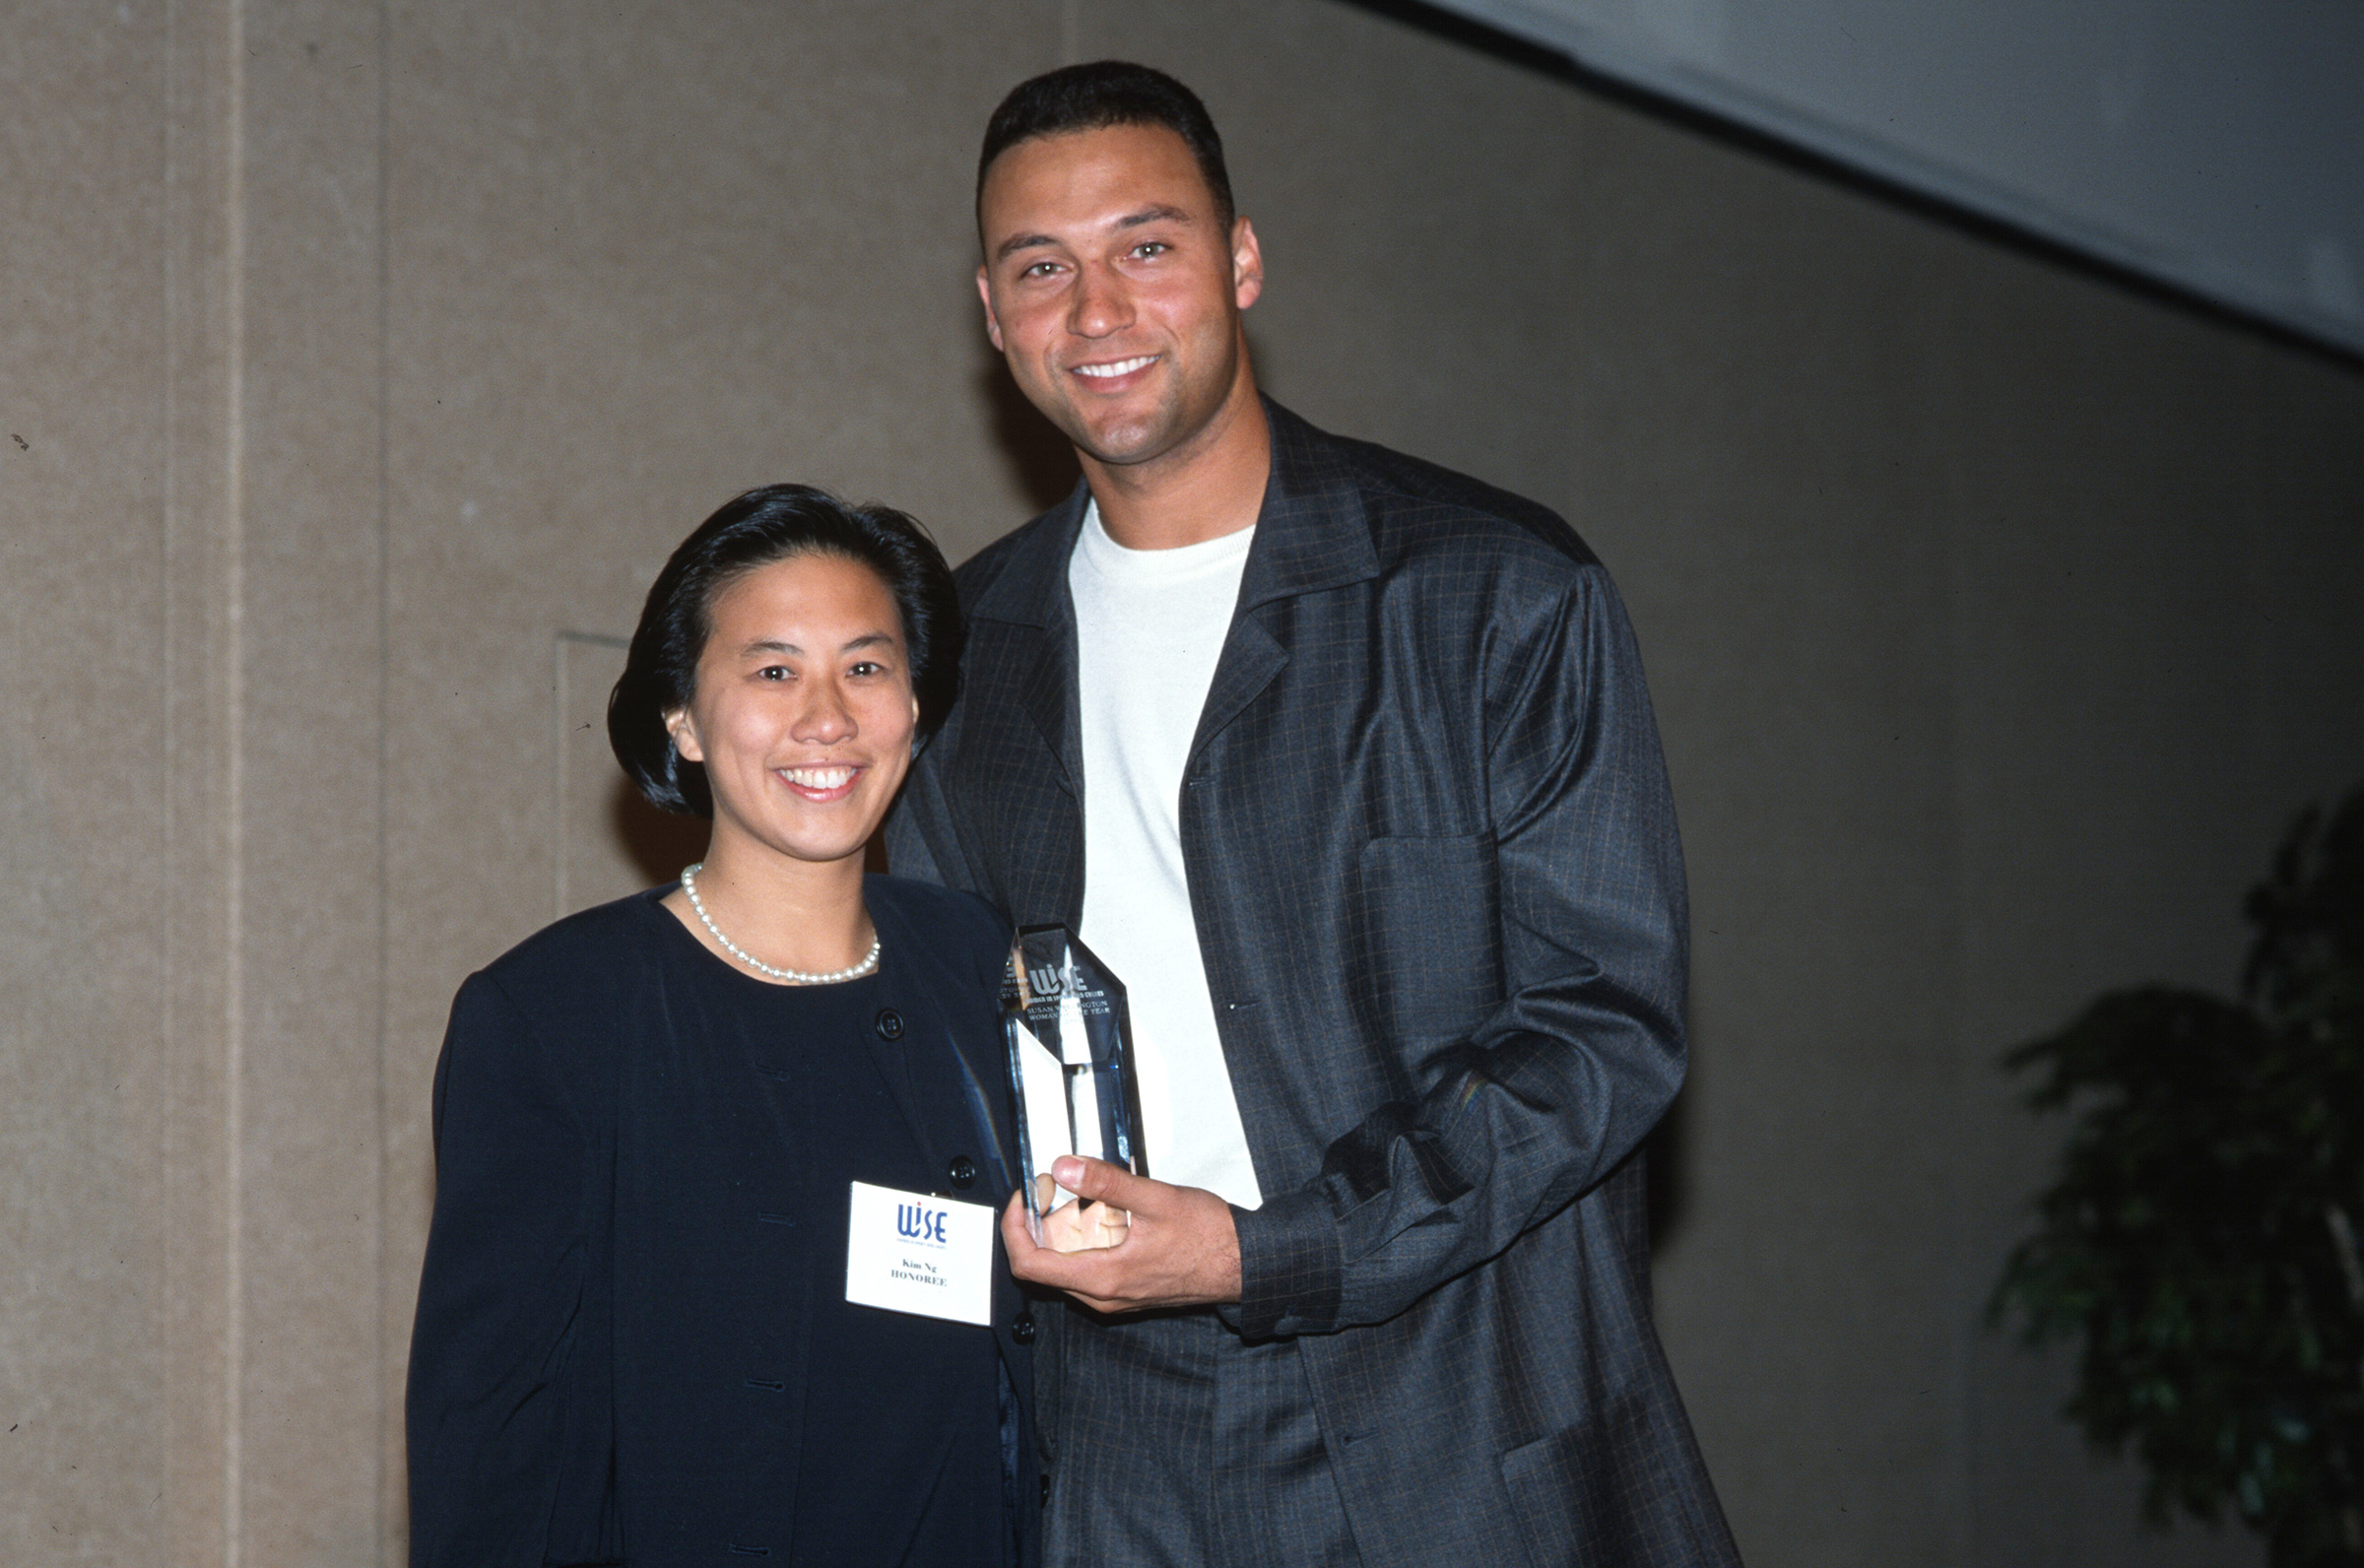 Ng receiving an award from Derek Jeter in 2000